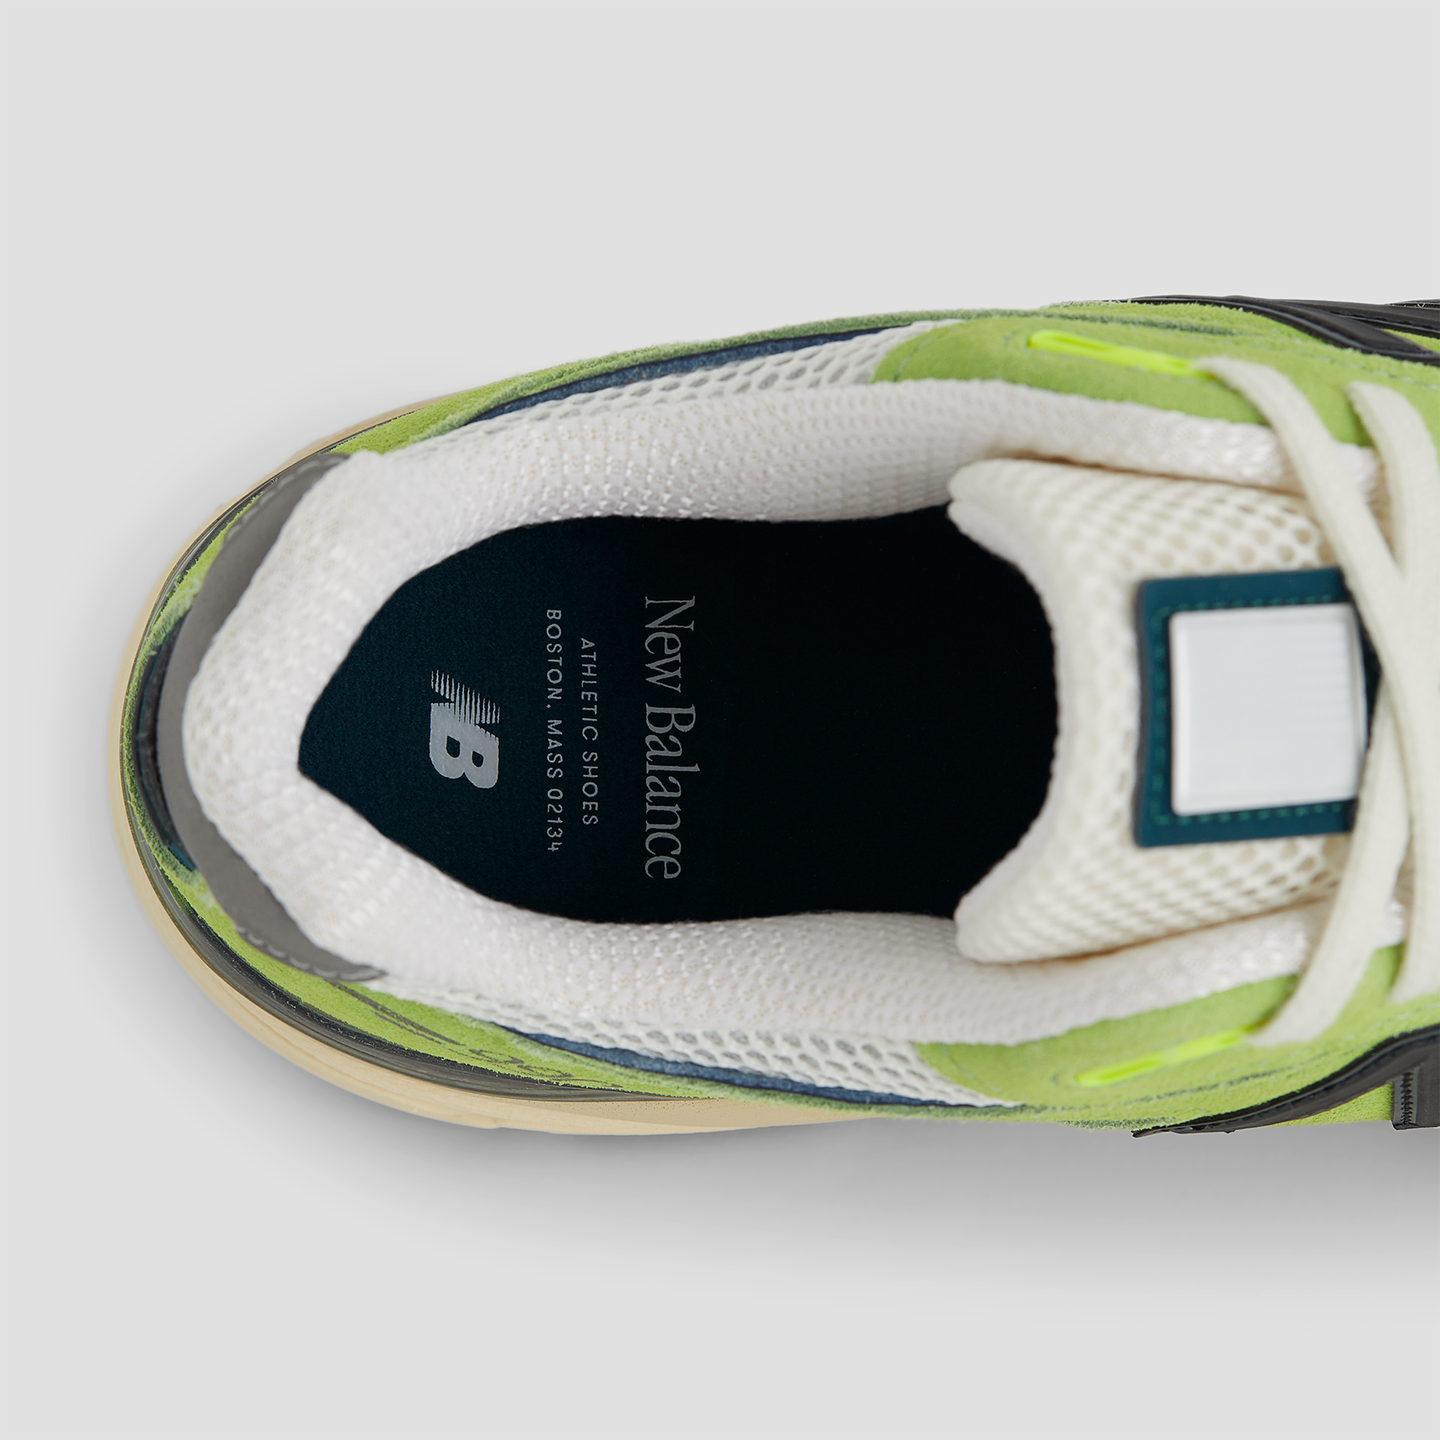 Pánské boty New Balance U990NB4 – zelené